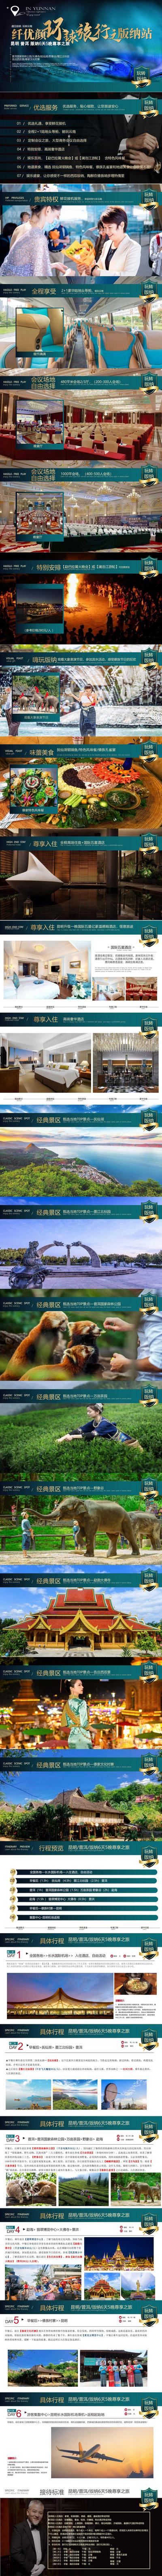 南门网 PPT 旅游 云南 西双版纳 行程 美景 大气 时尚 绿金